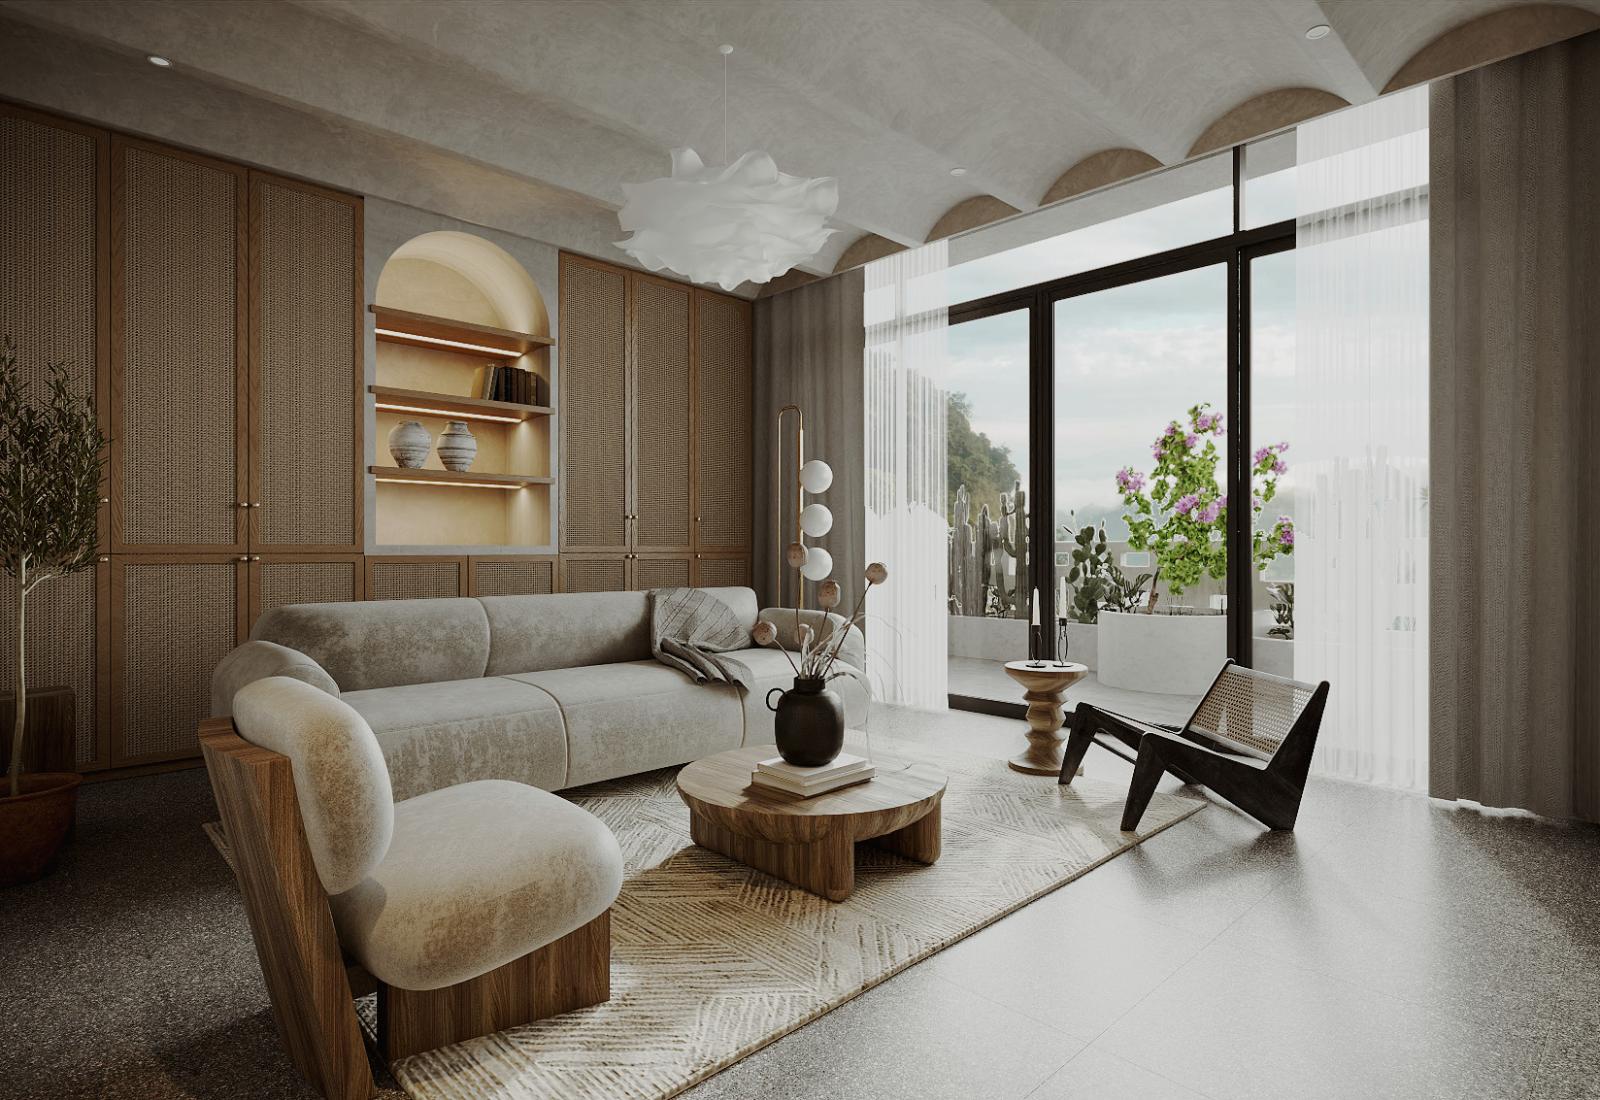 Không gian phòng khách rộng rãi, sử dụng nội thất cao cấp thiên về chất liệu tự nhiên. Căn phòng kết nối trực tiếp với ban công thư giãn bên ngoài.